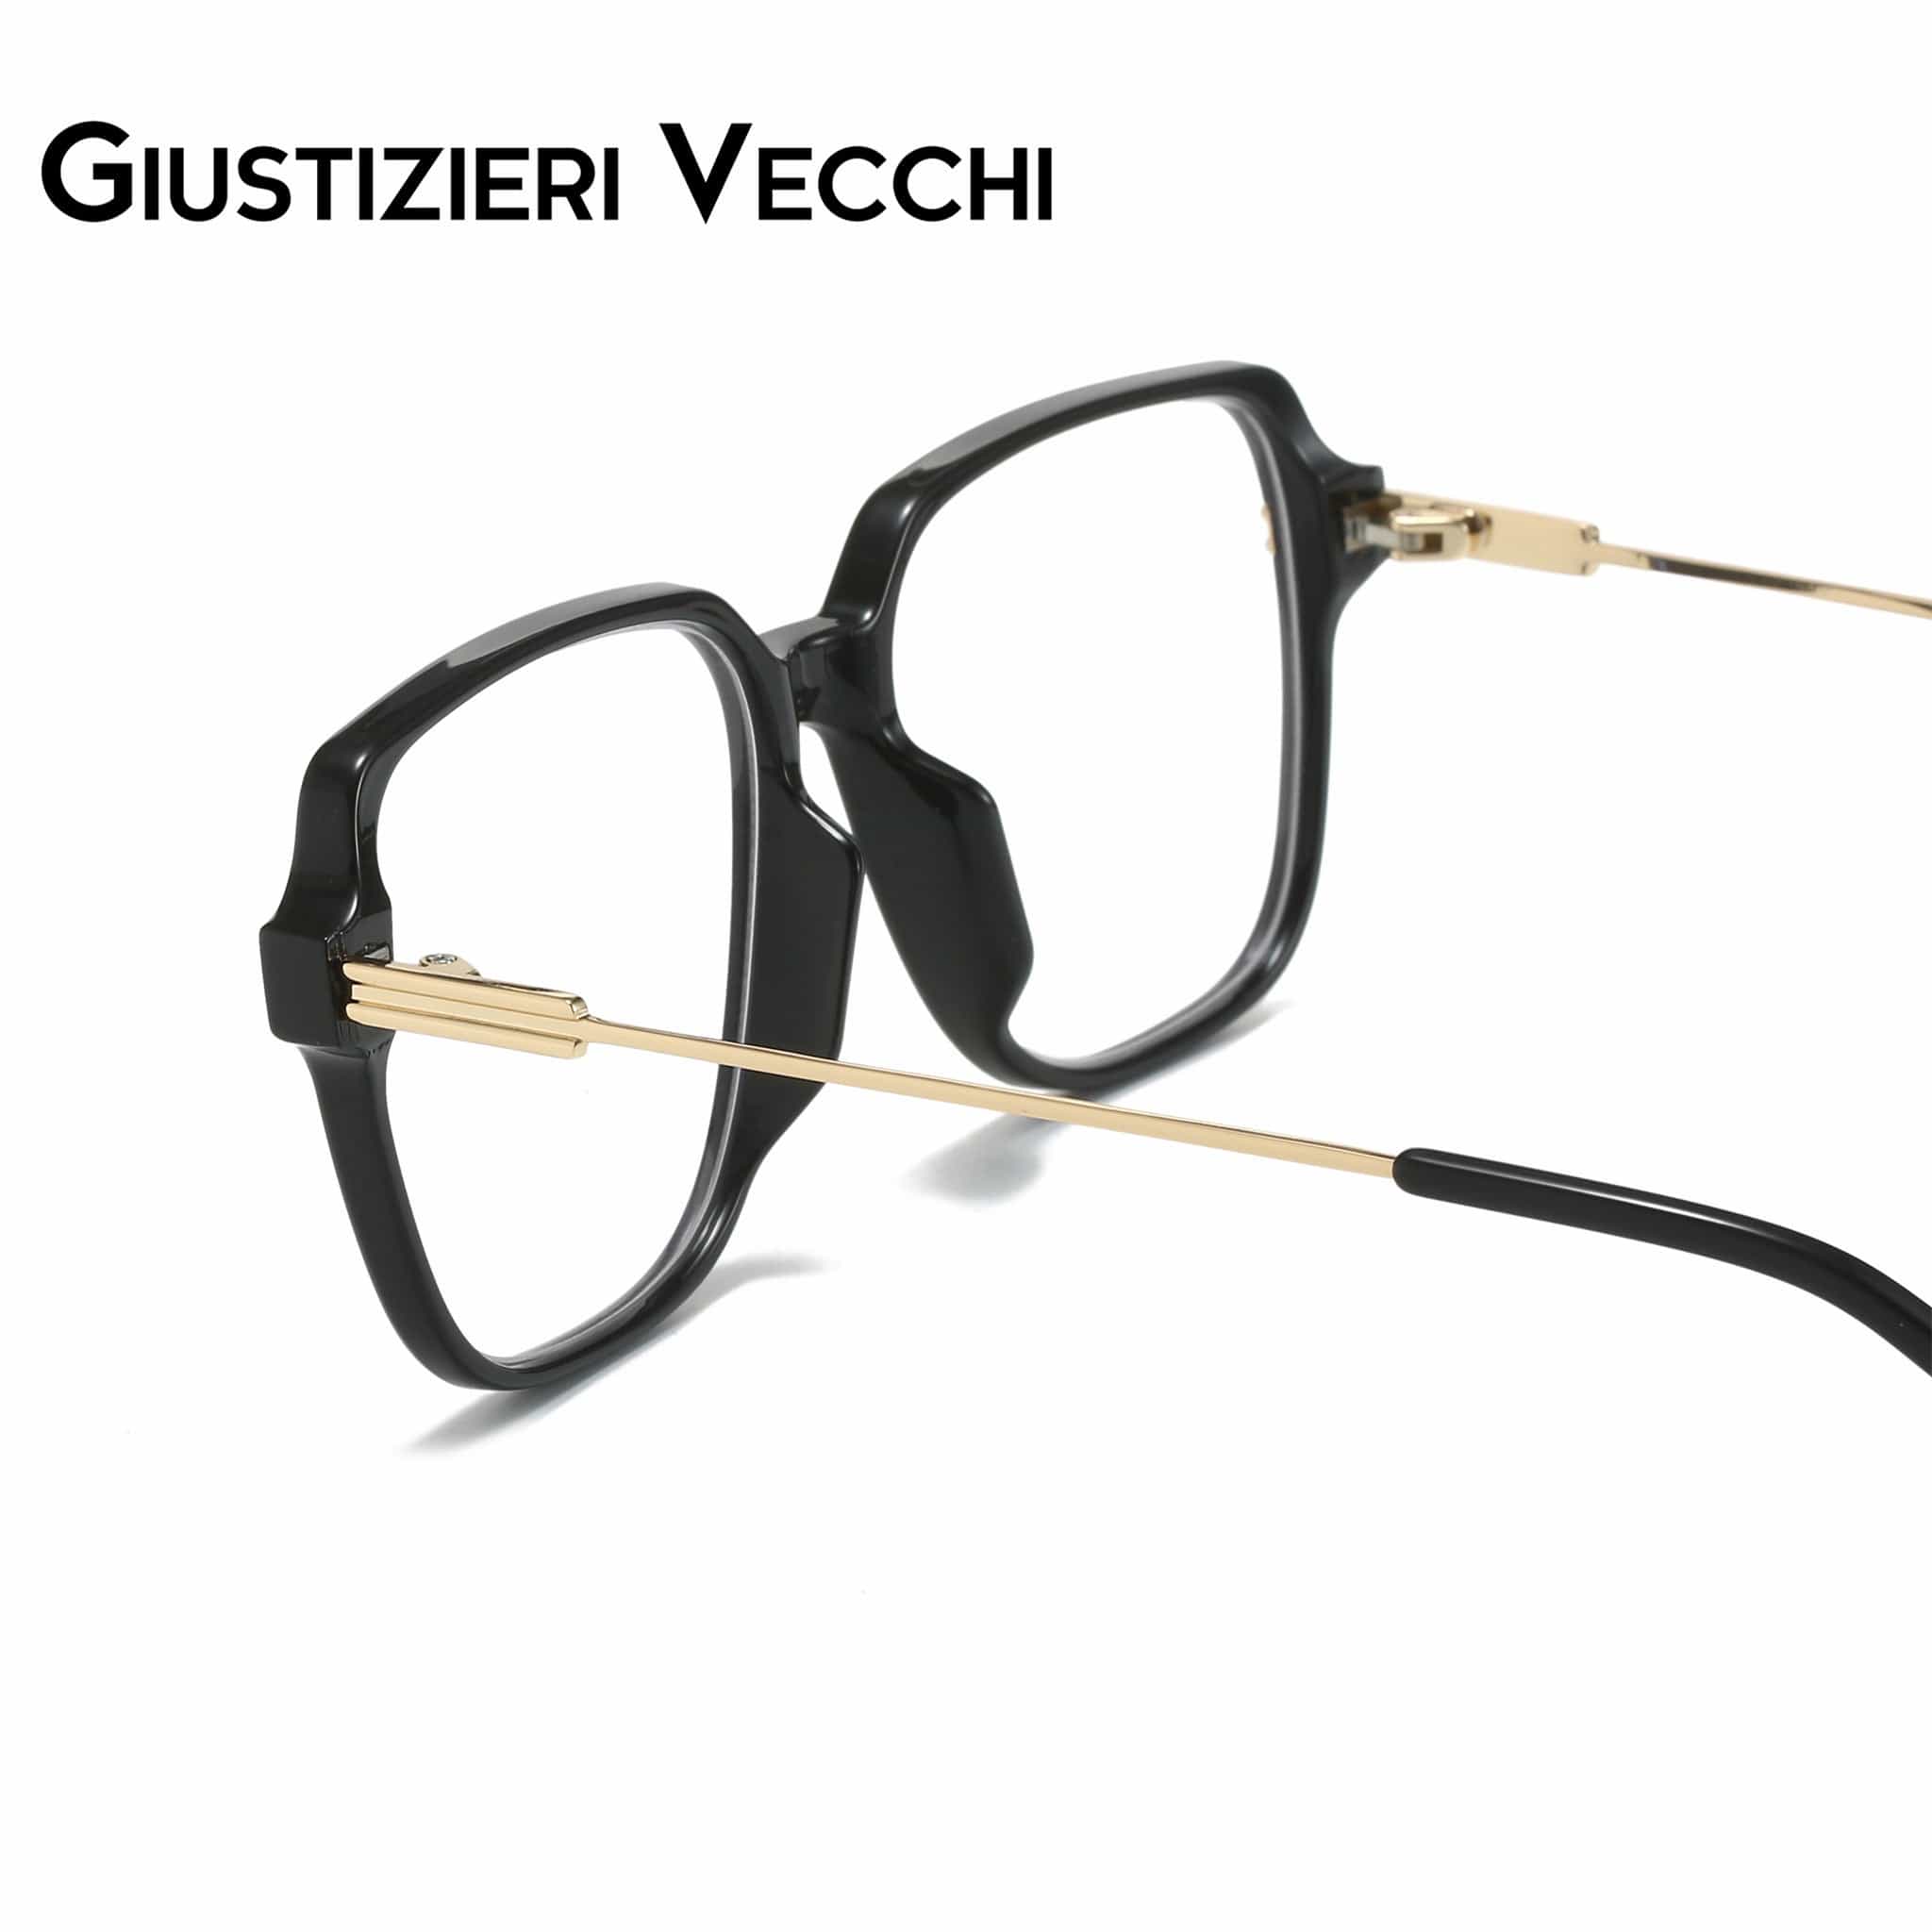 GIUSTIZIERI VECCHI Eyeglasses MysticRider Uno